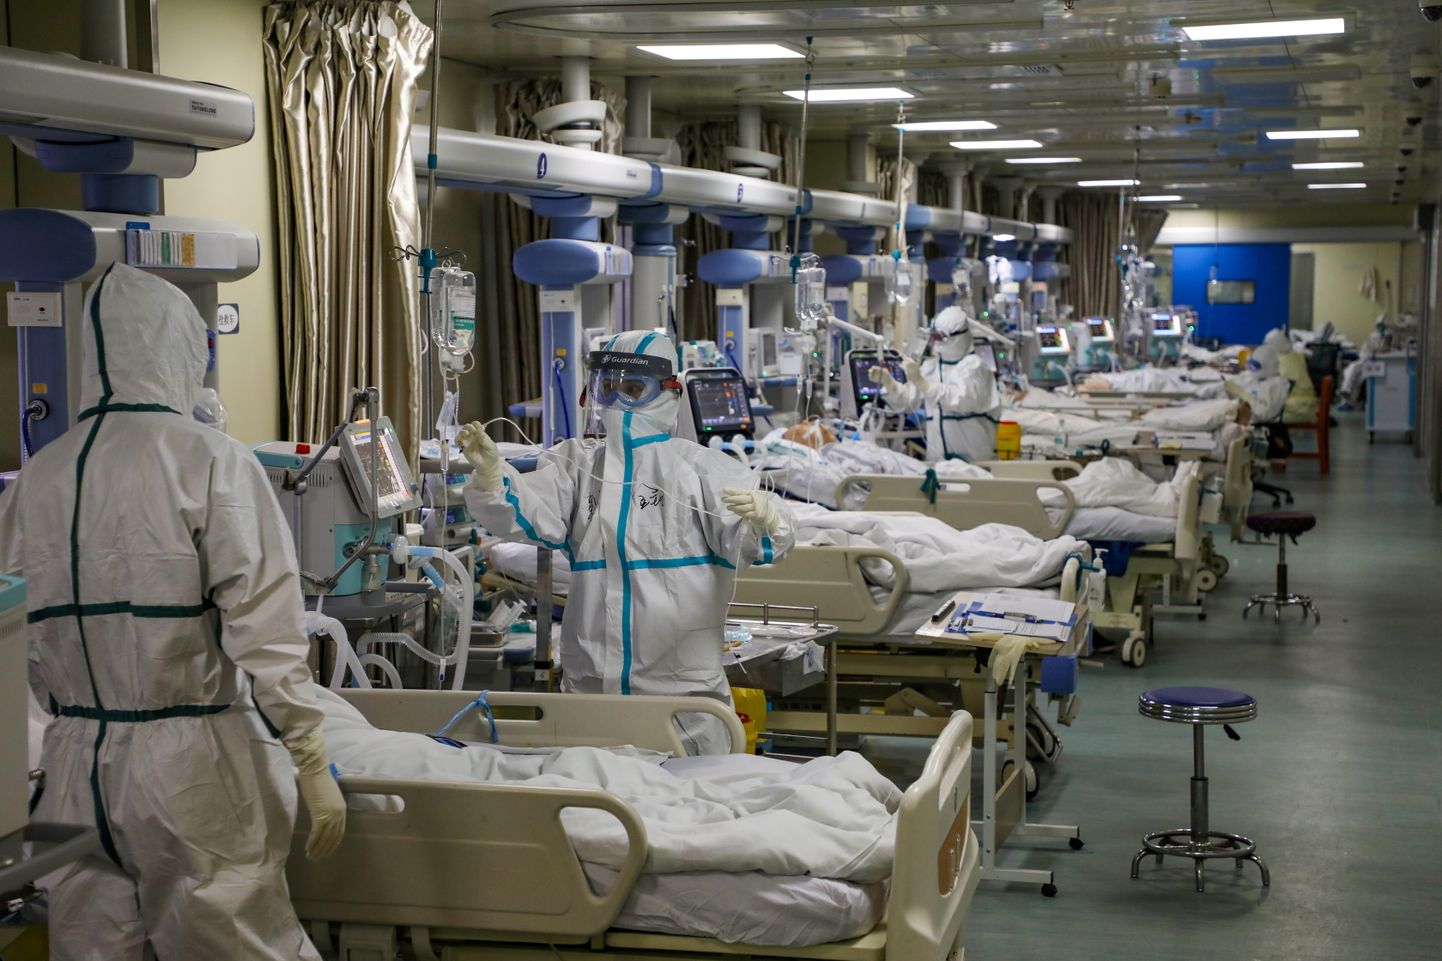 Hiina Hubei provintsi Wuhani üks haiglatest veebruaris 2020, kus intensiivravi osakonnas on näha koroonaviiruse põhjustatud viirushaiguse Covid-19 põdejaid ja kaitseülikondades arste